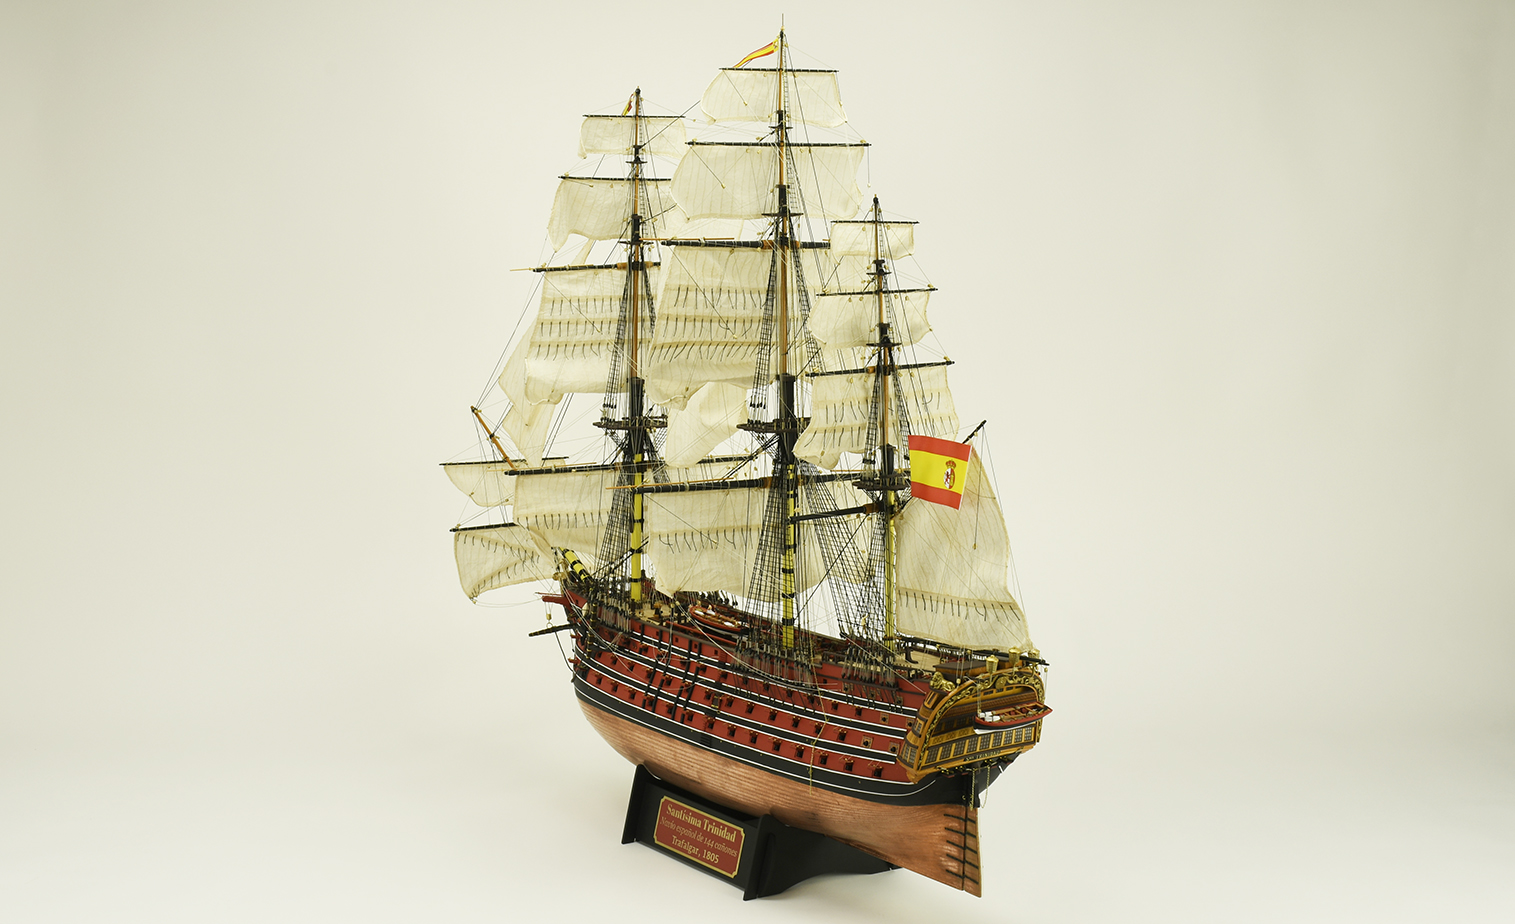 Modélisme Naval pour Experts. Maquette Bateau en Bois Navire de Ligne Espagnol Santísima Trinidad (22901) par Artesanía Latina.